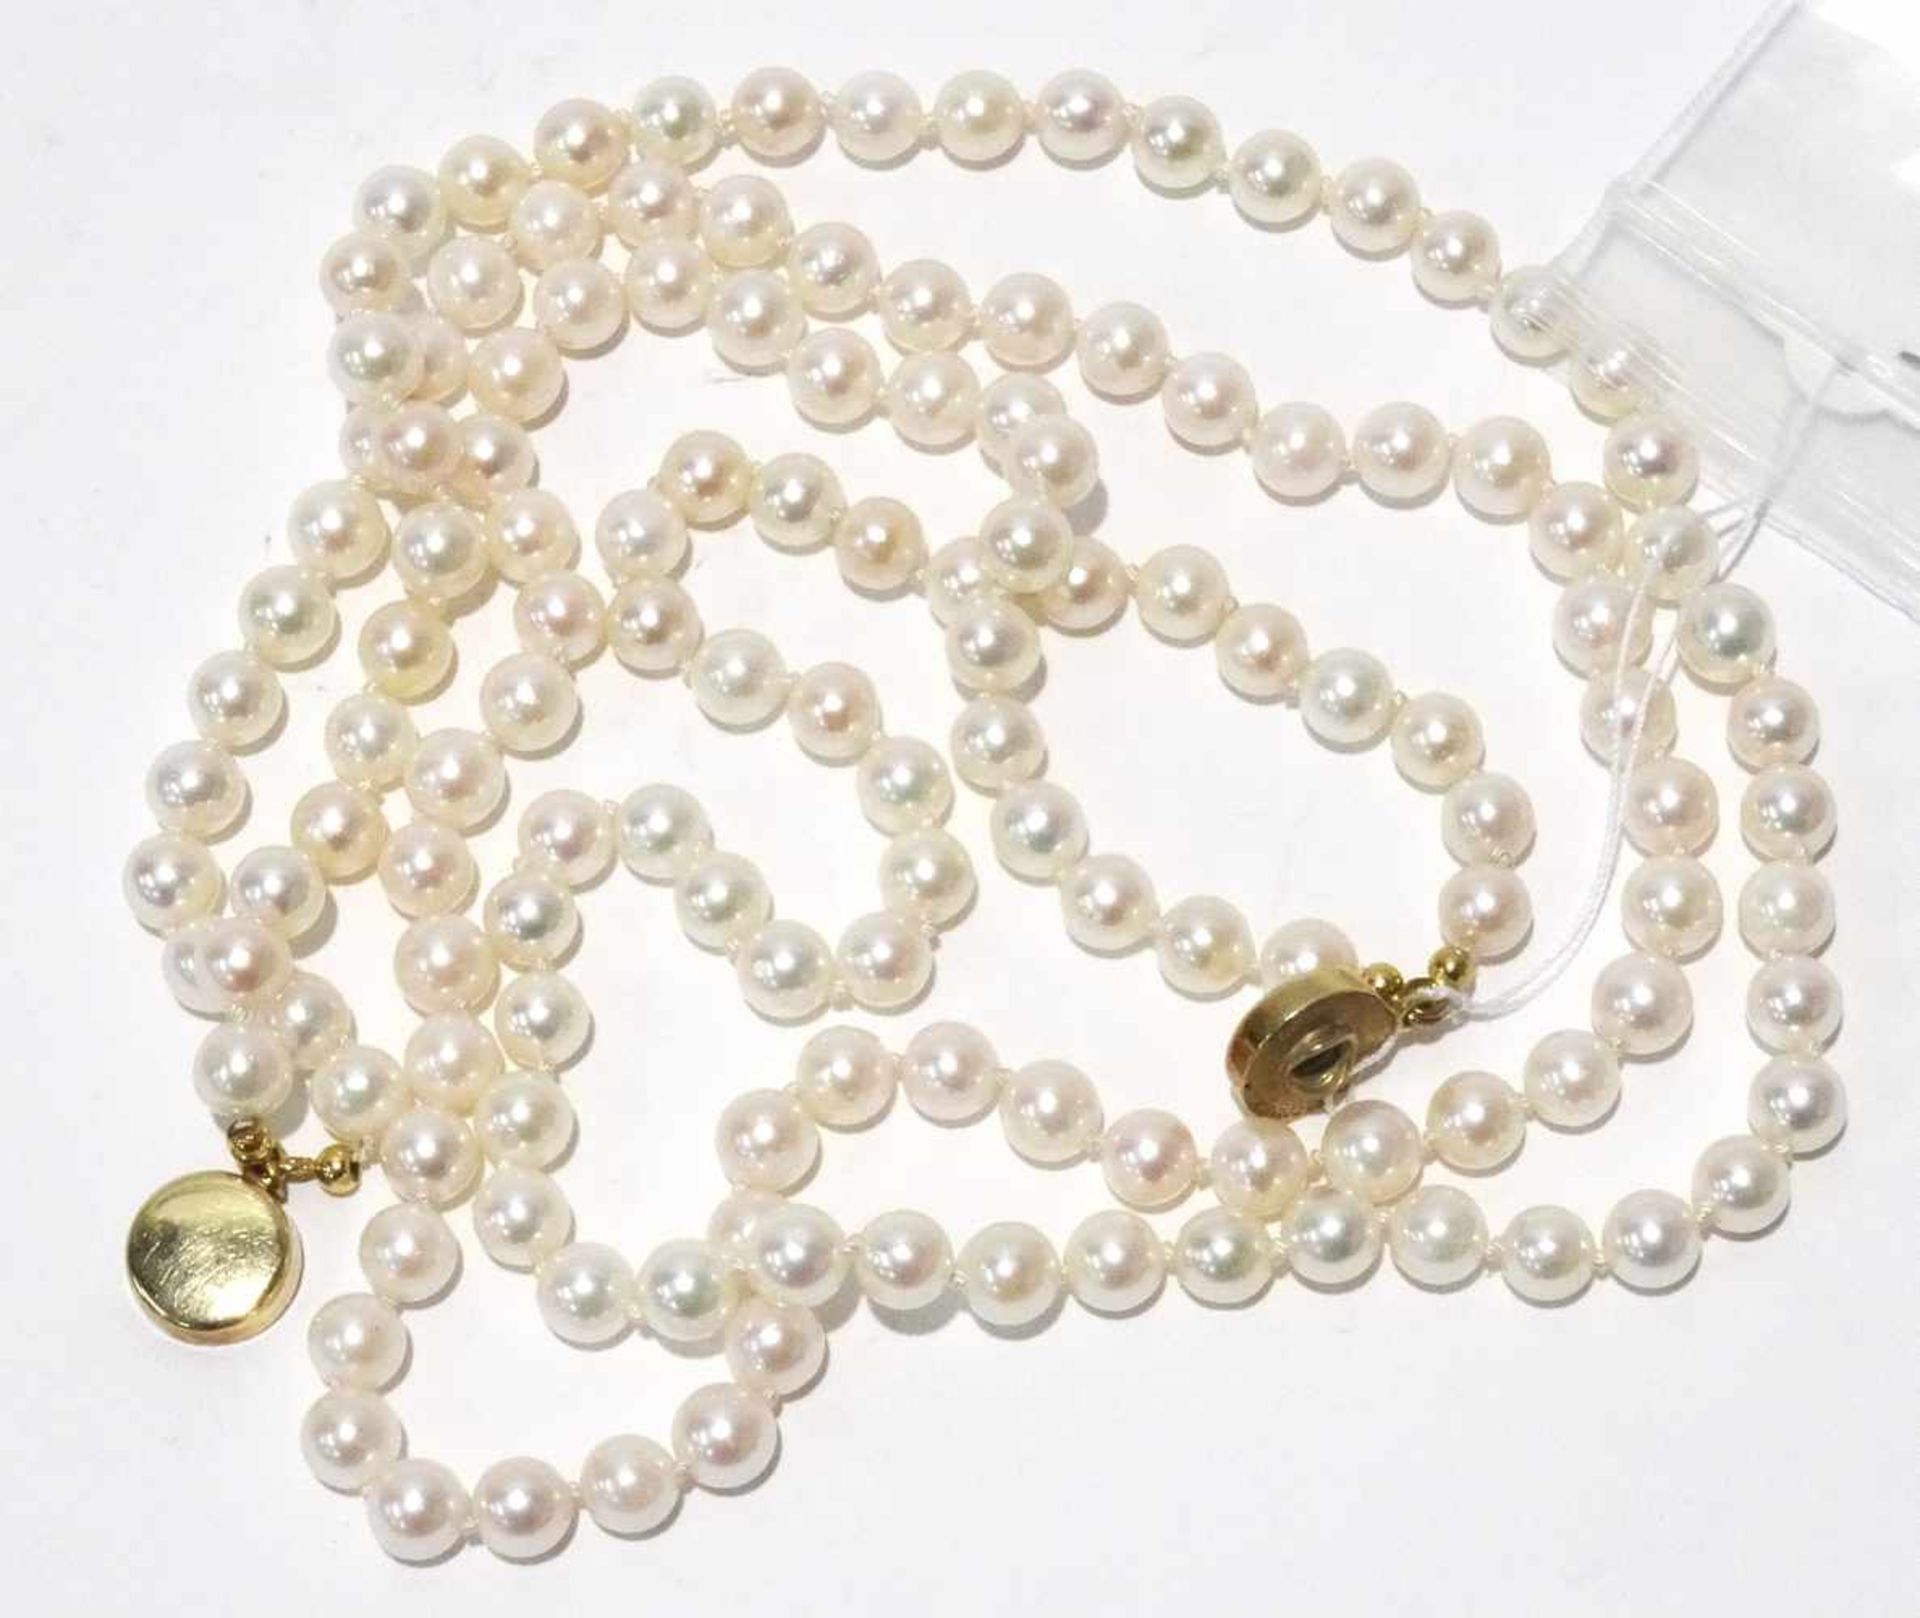 Zuchtperlenkette 2 reihig mit Perlen Durchmesser ca. 6mm, Farbe weiß bis rose, sehr feines Lüster, - Image 3 of 3